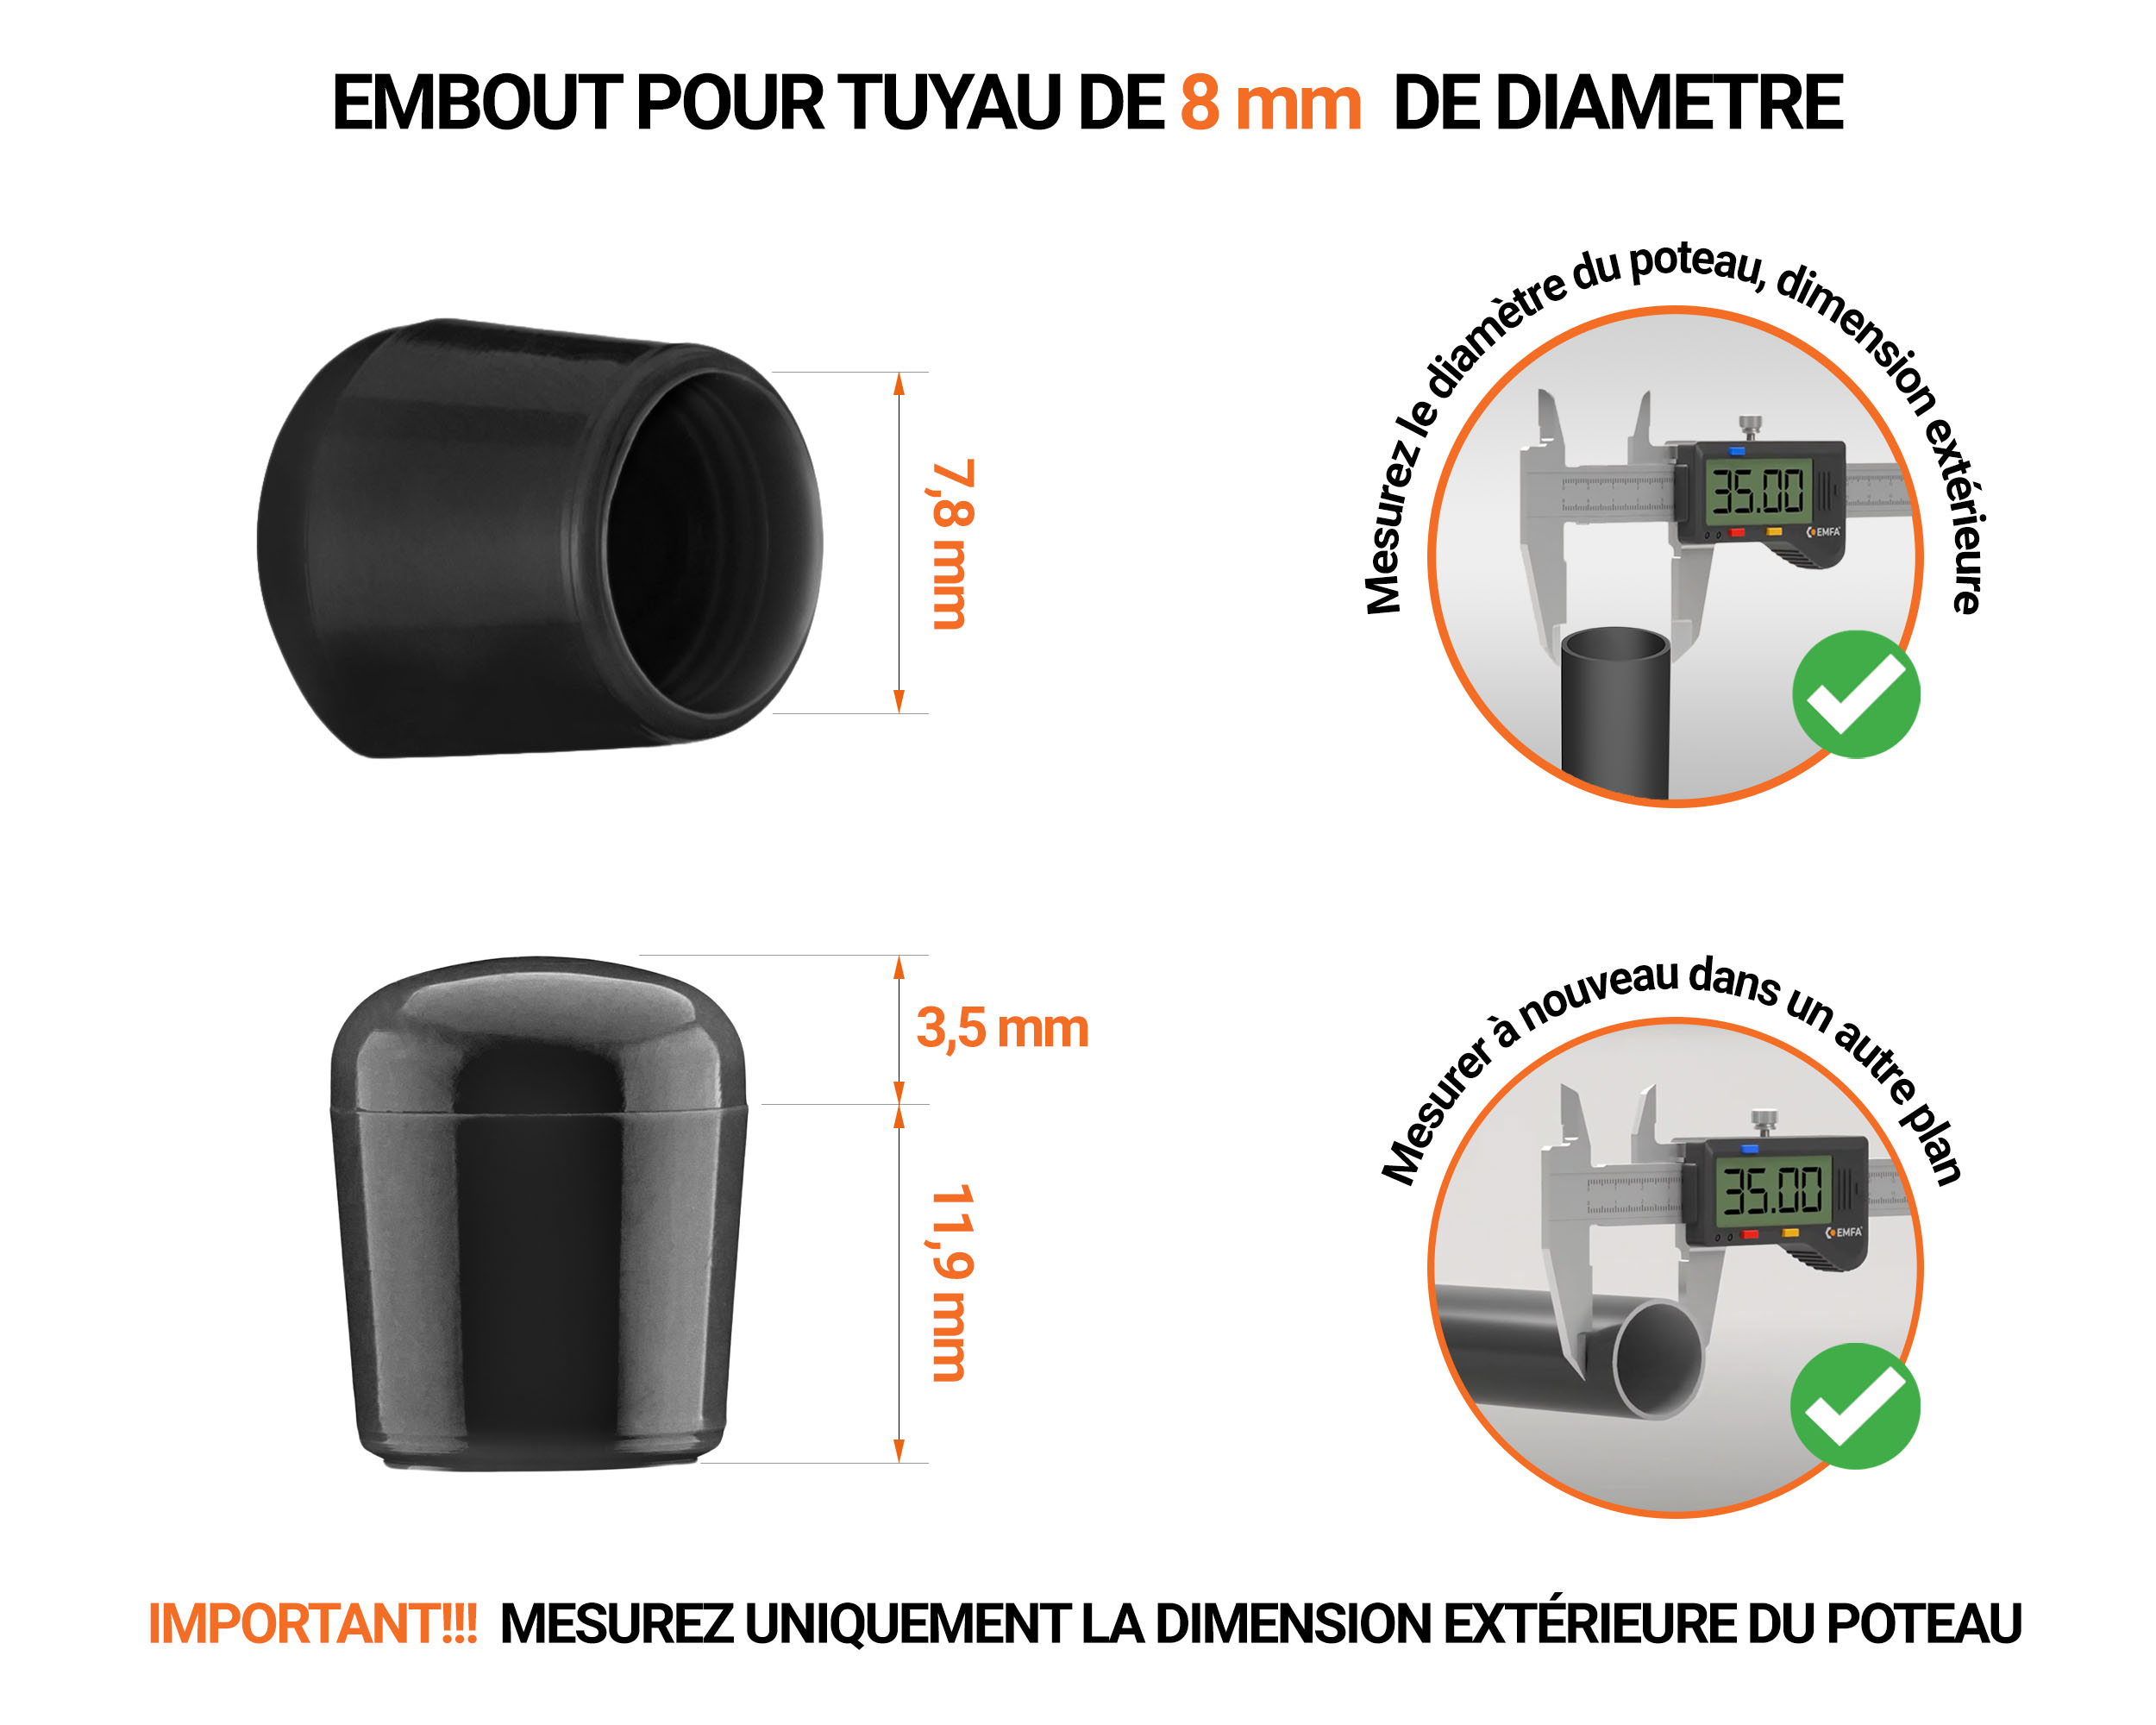 Embout noir de diamètre extérieur PVC 8 mm pour tube rond avec dimensions et guide de mesure correcte du bouchon plastique.